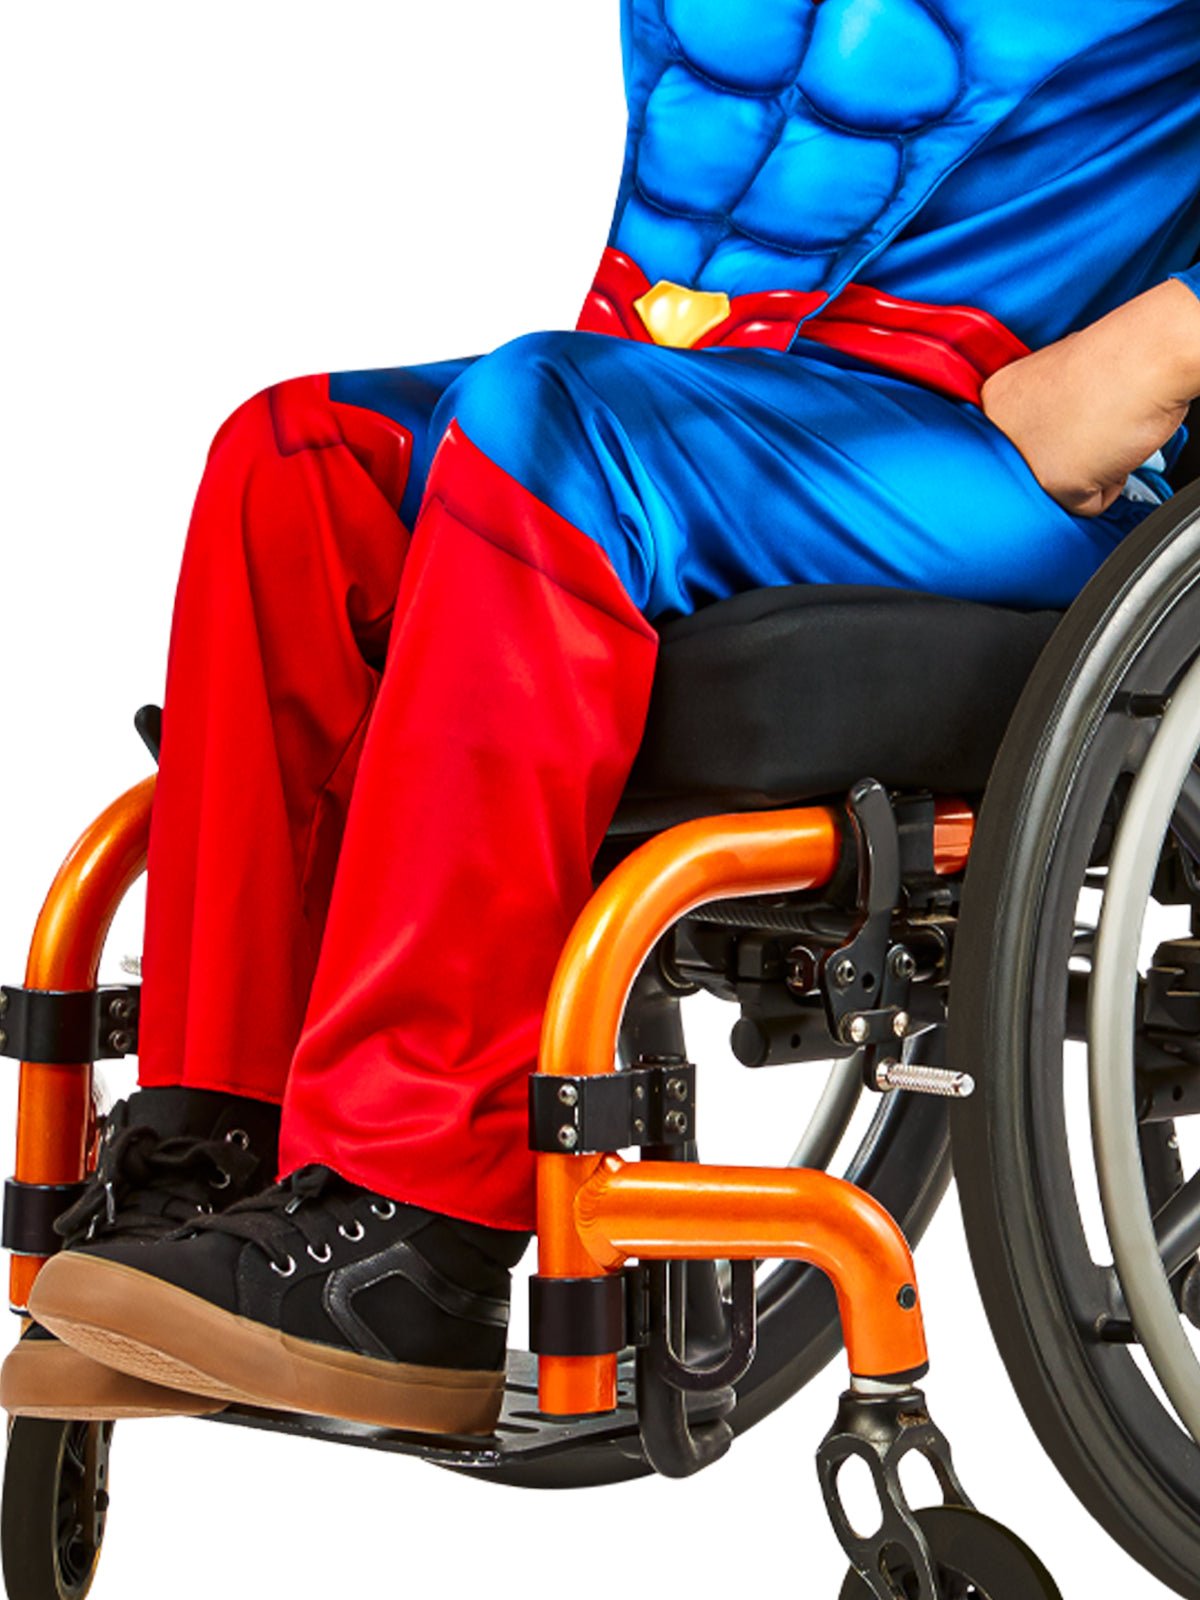 Child Wearing Superman Adaptive Costume